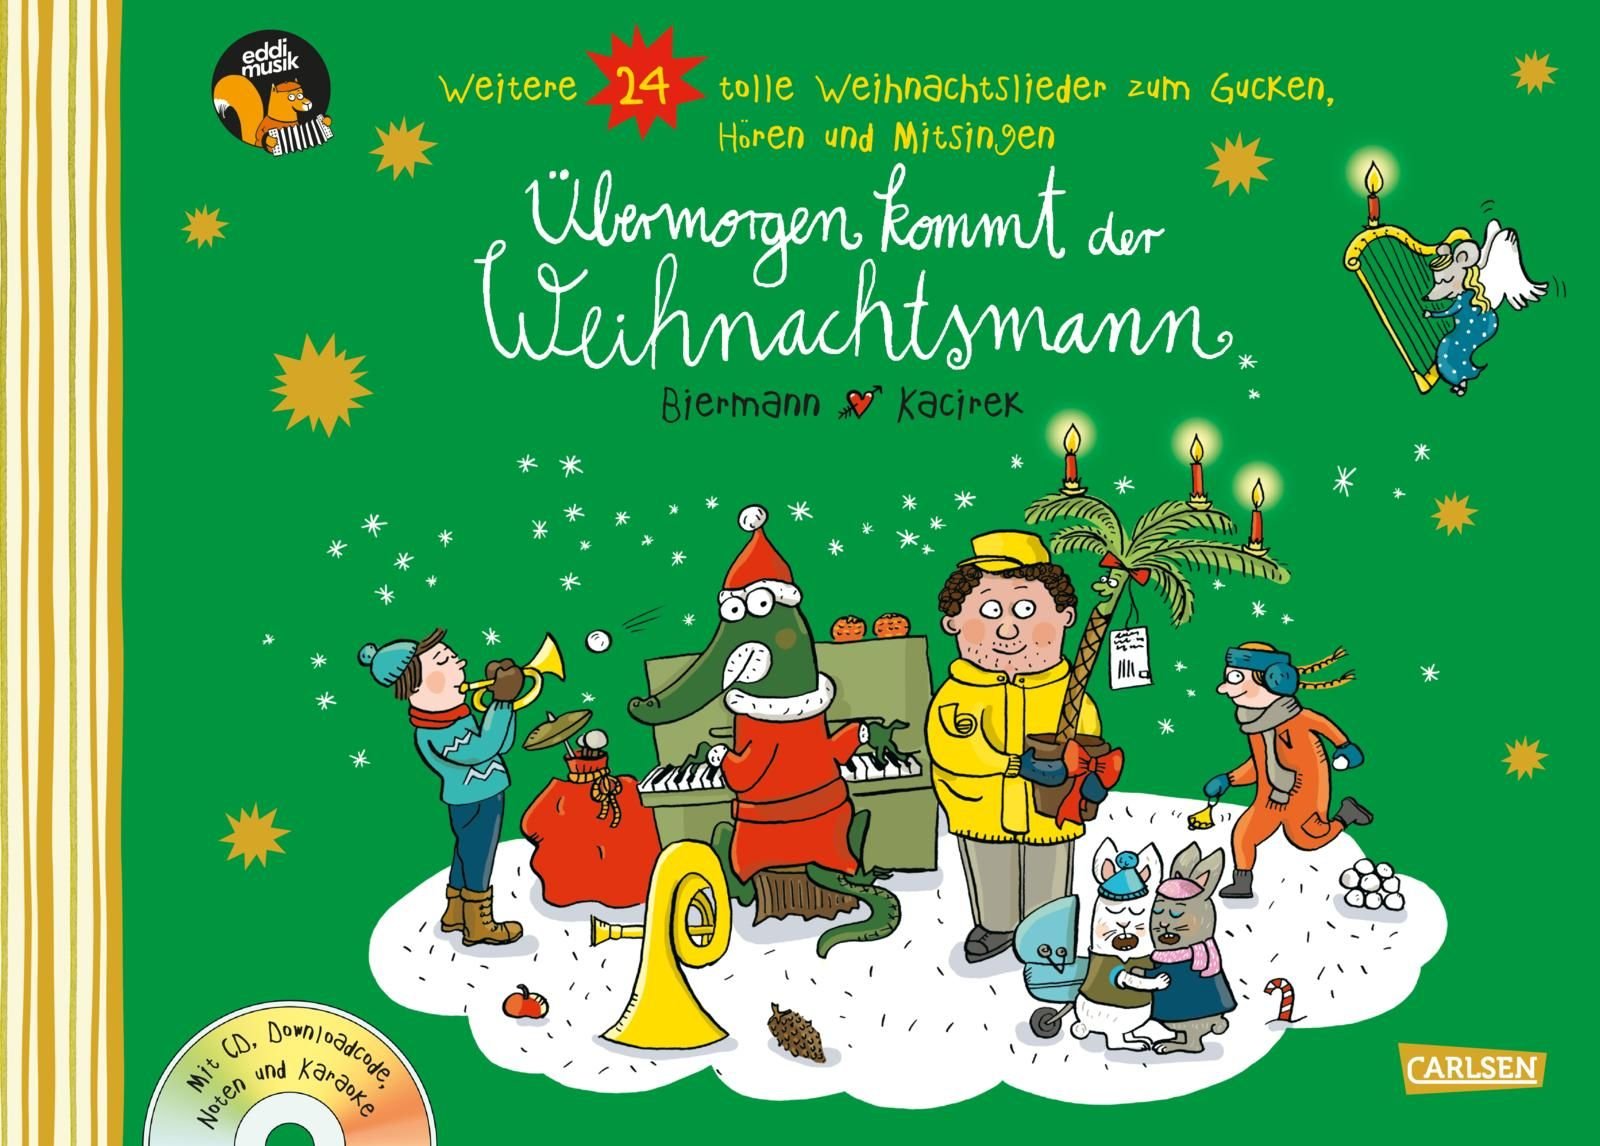 Buchcover "Übermorgen kommt der Weihnachtsmann", Carlsen